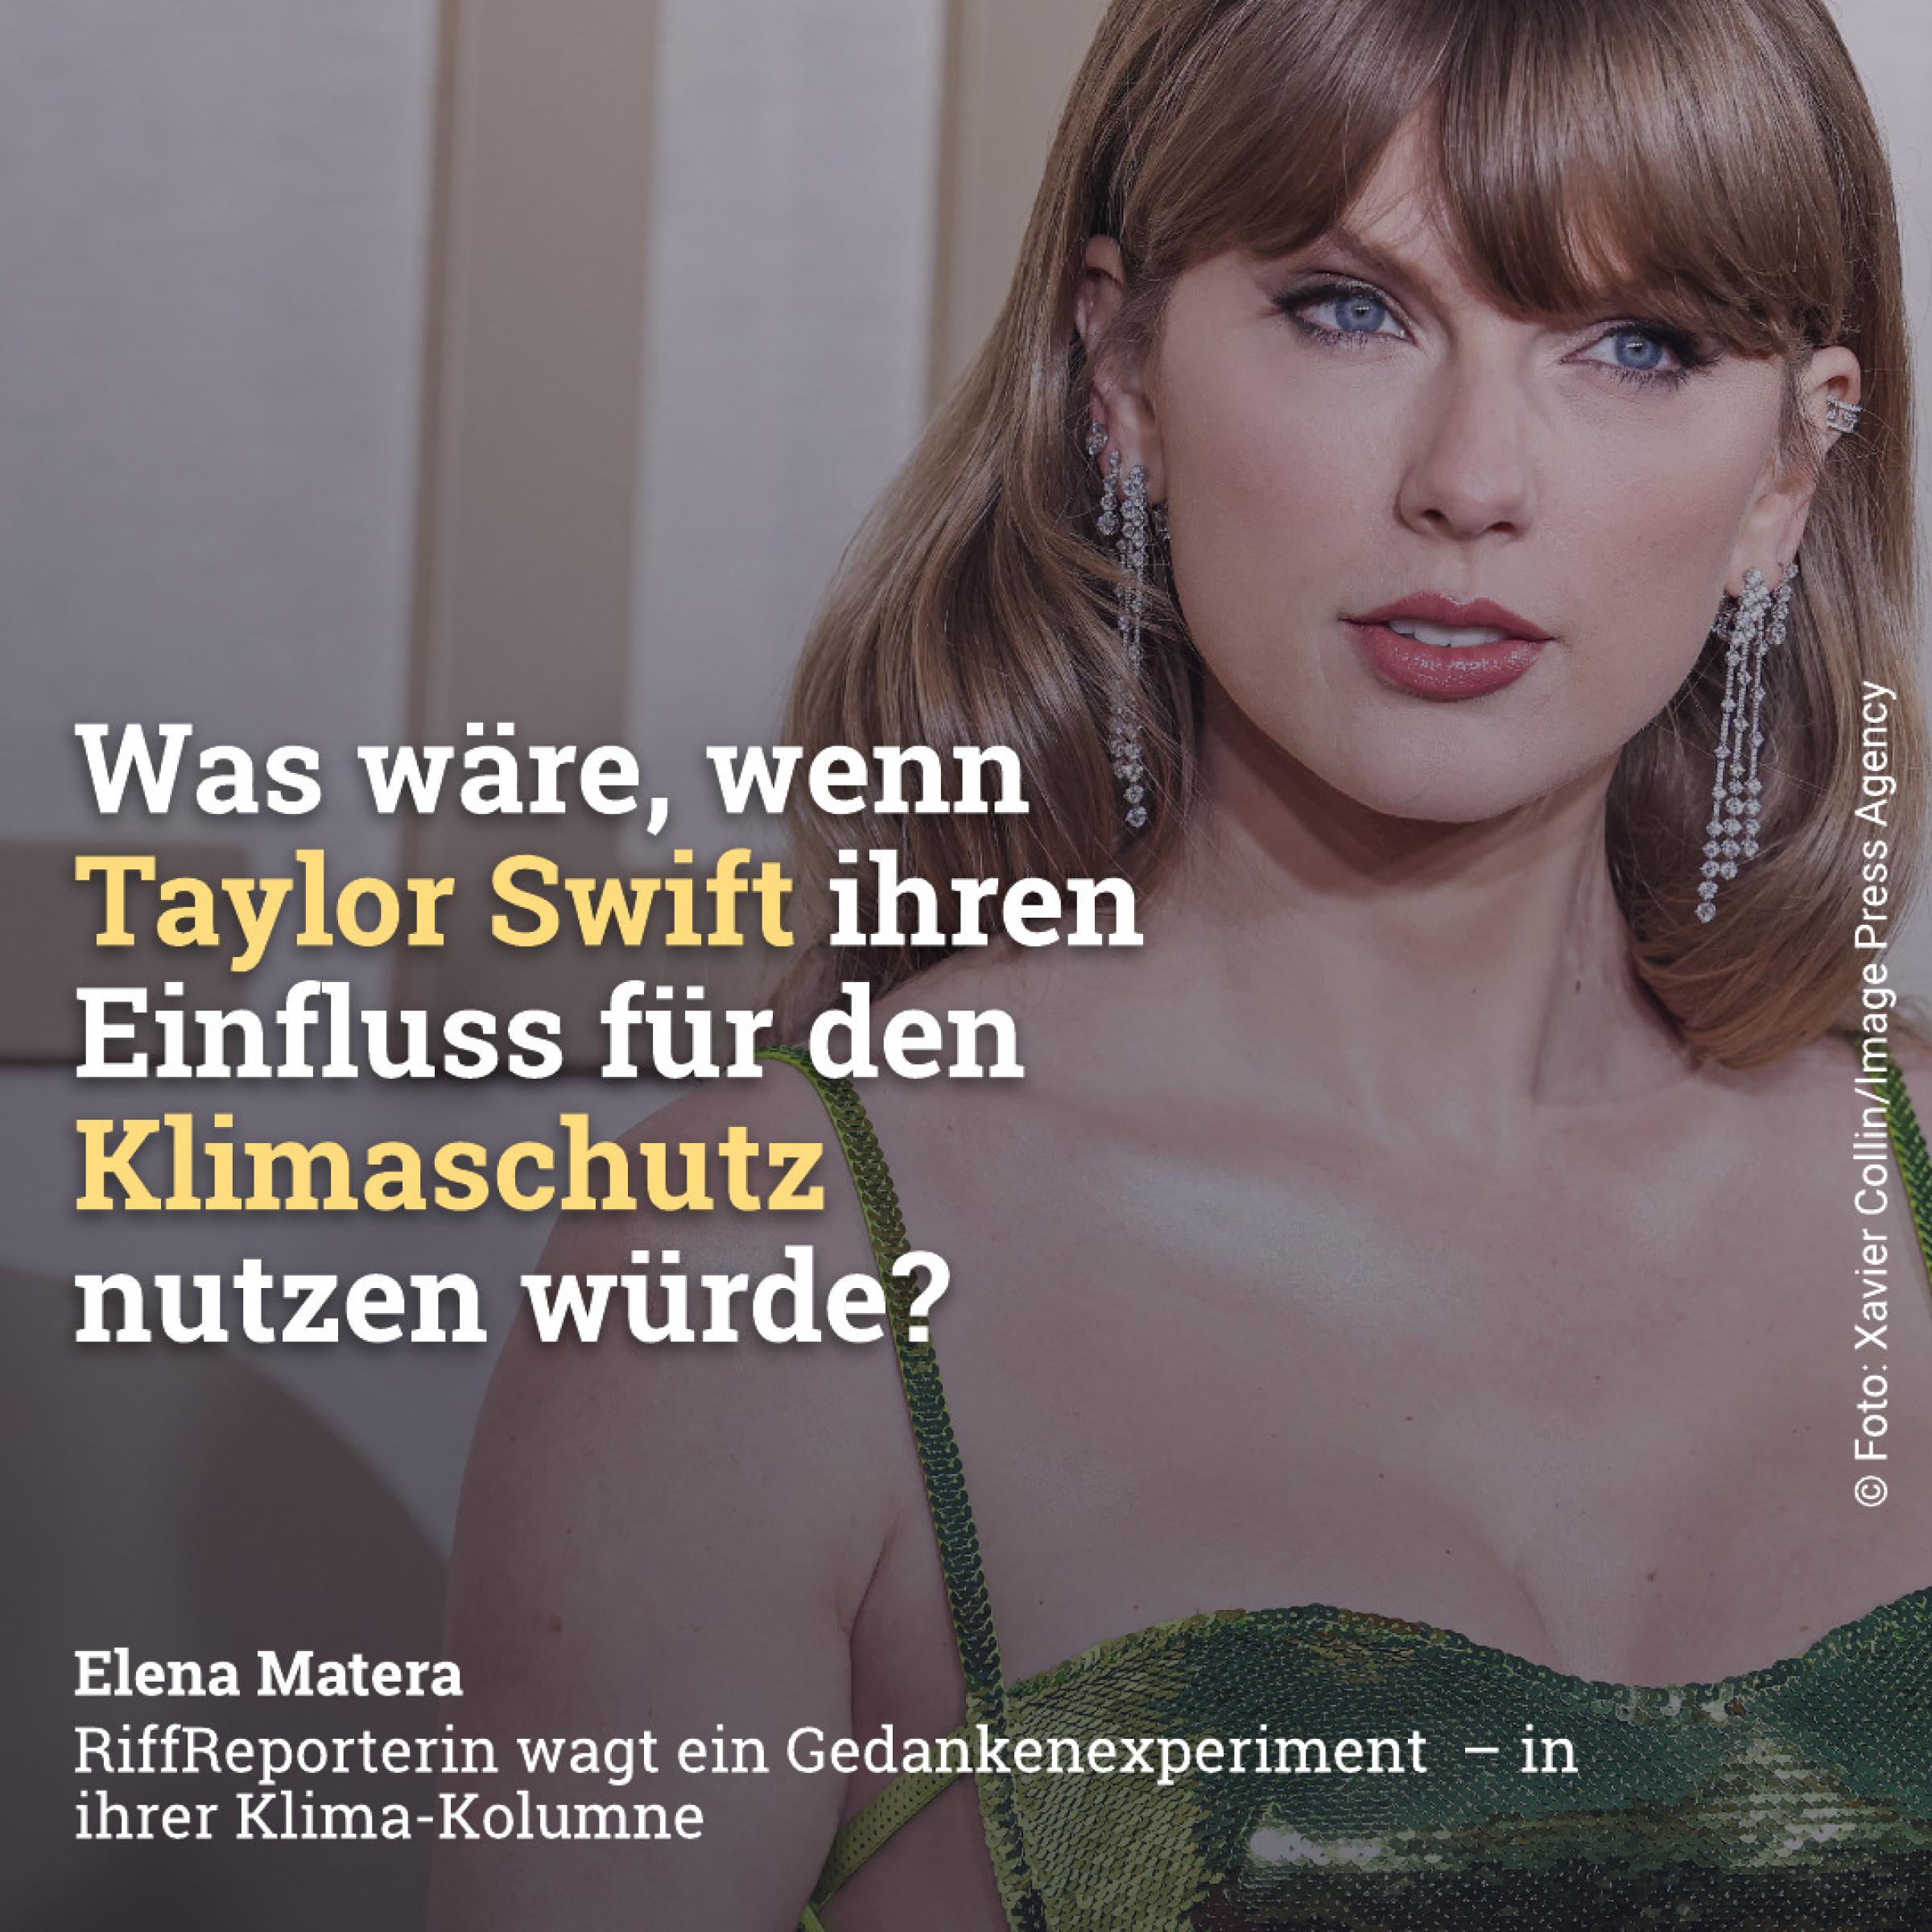 Was wäre wenn Taylor Swift ihren Einfluss für den Klimaschutz nutzen würde?